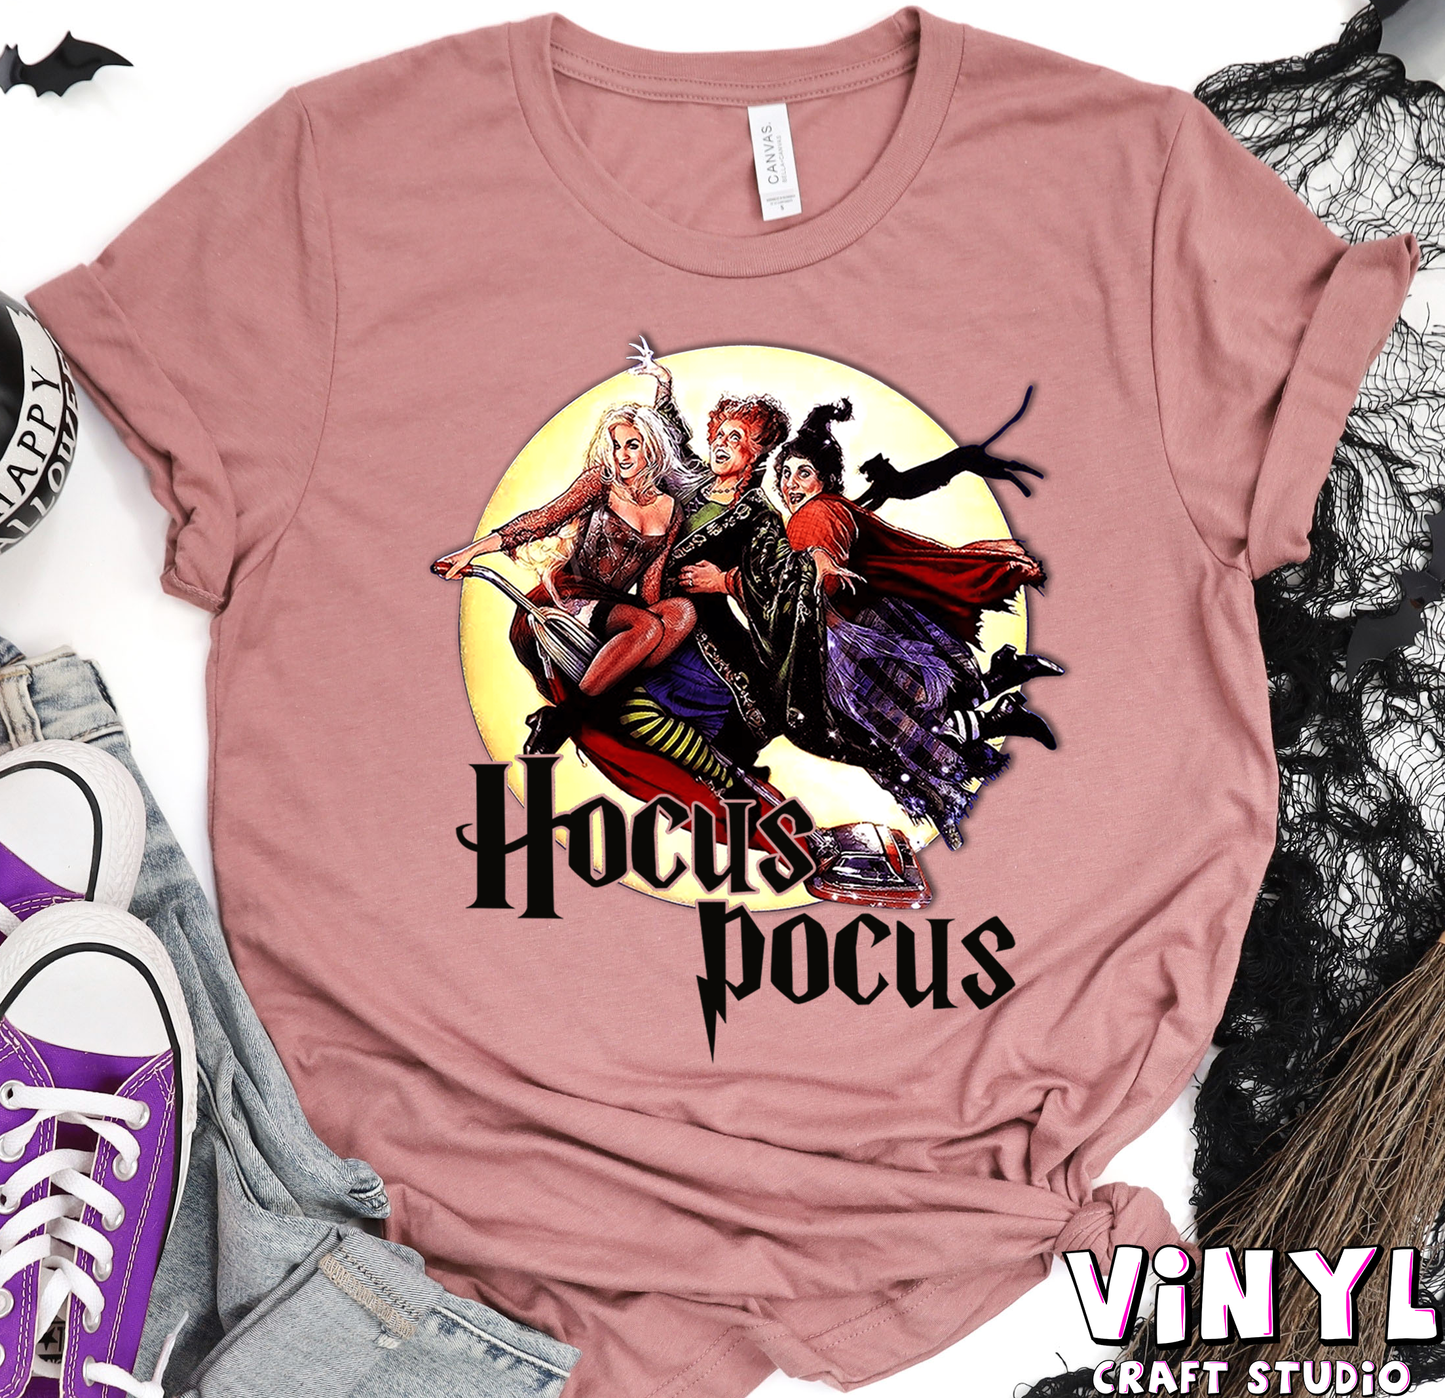 697.) Hocus Pocus